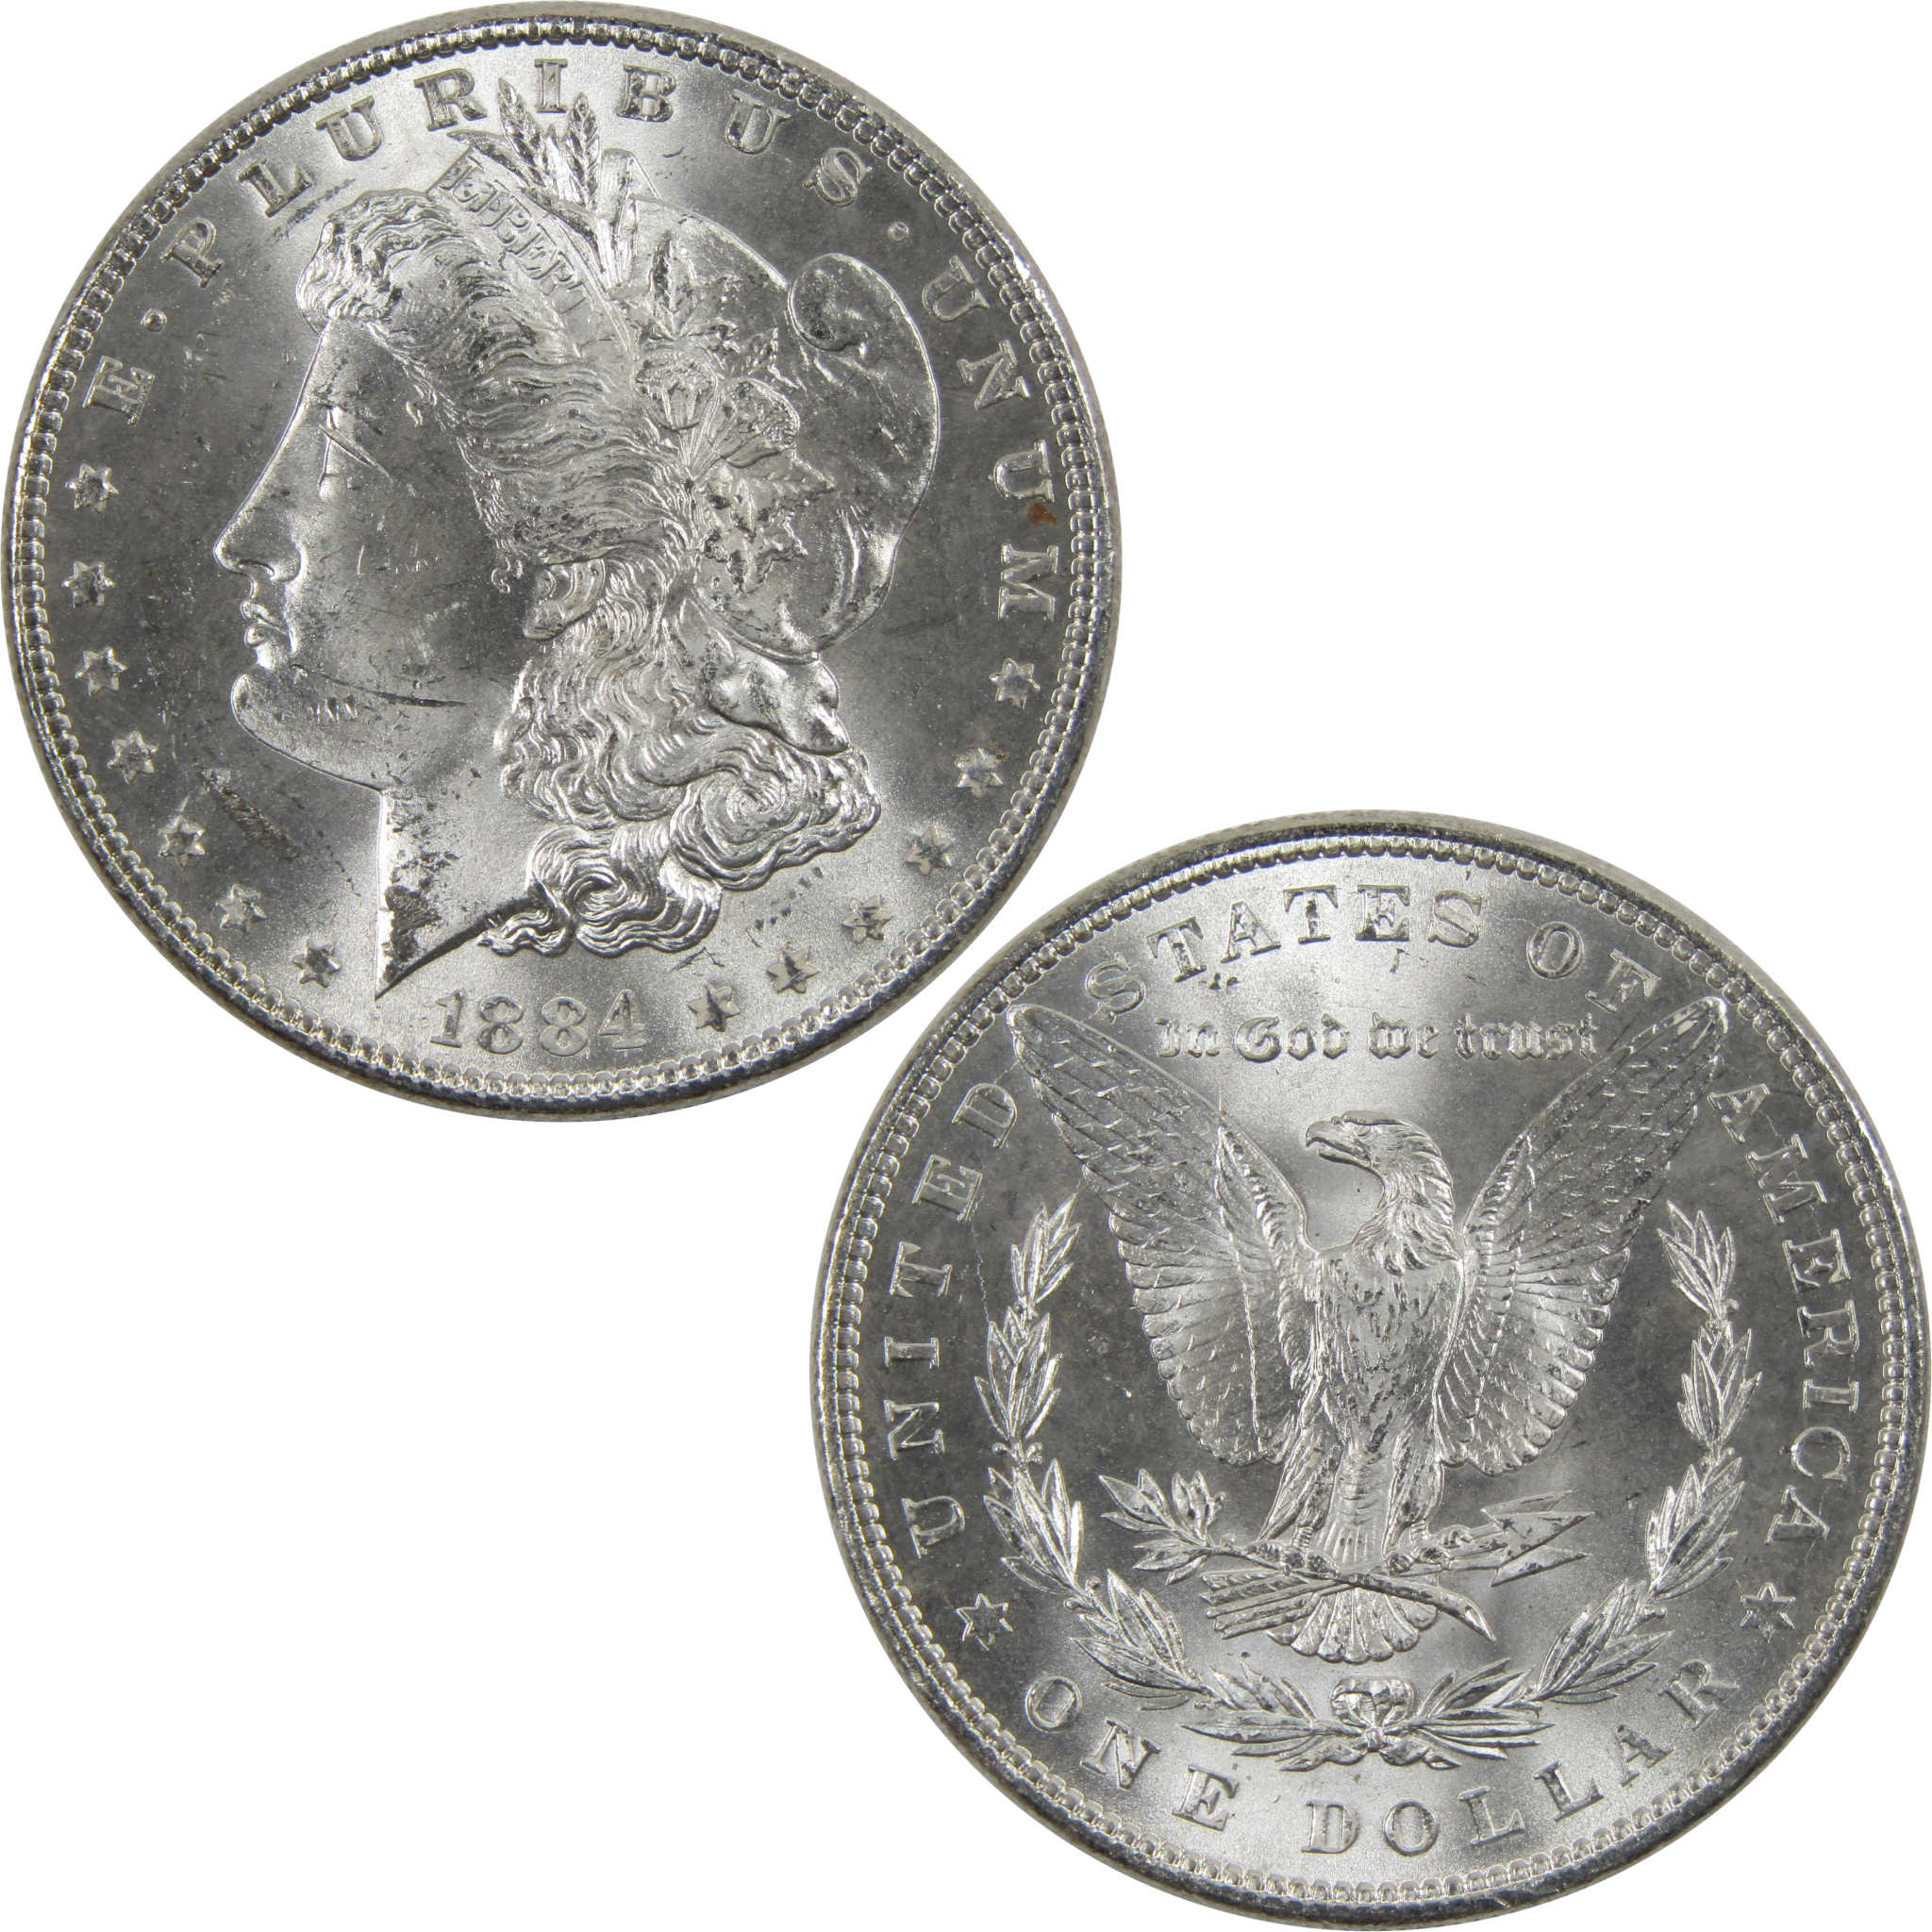 1884 Morgan Dollar BU Uncirculated 90% Silver $1 Coin SKU:I6027 - Morgan coin - Morgan silver dollar - Morgan silver dollar for sale - Profile Coins &amp; Collectibles